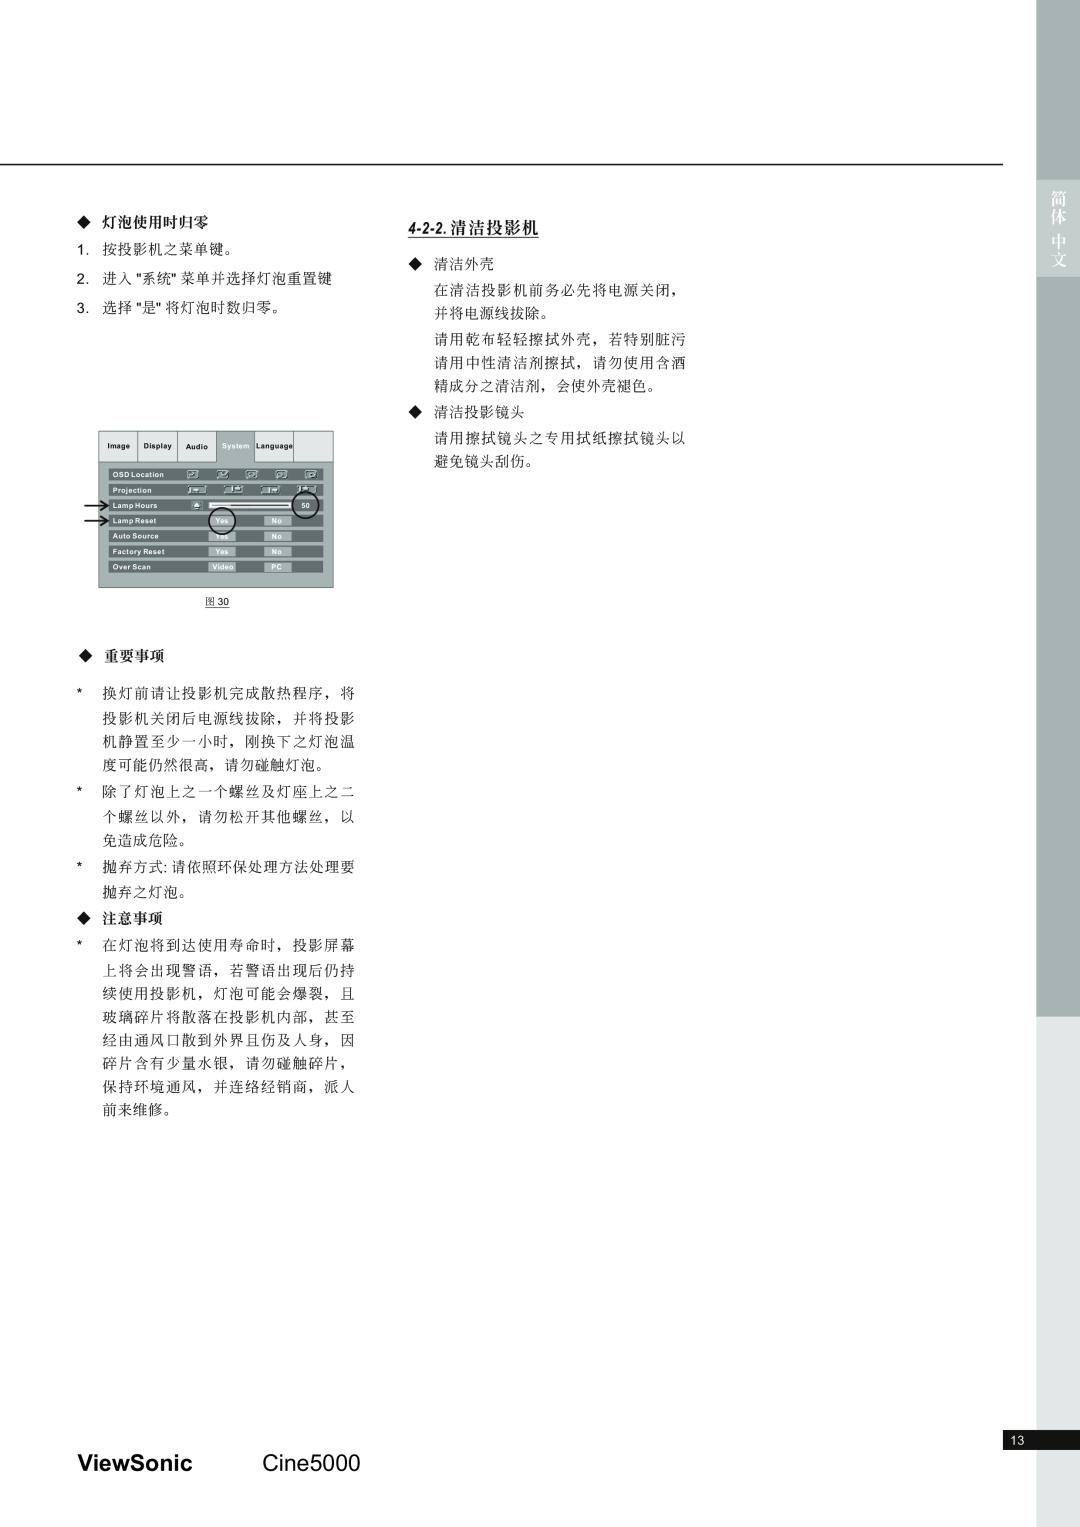 ViewSonic CINE5000 manual 9LHZ6RQLF &LQH, 4-2-2. 清潔投 影機, 簡 體 中文, 燈泡使用時歸零, 重要事項, 注意事項 